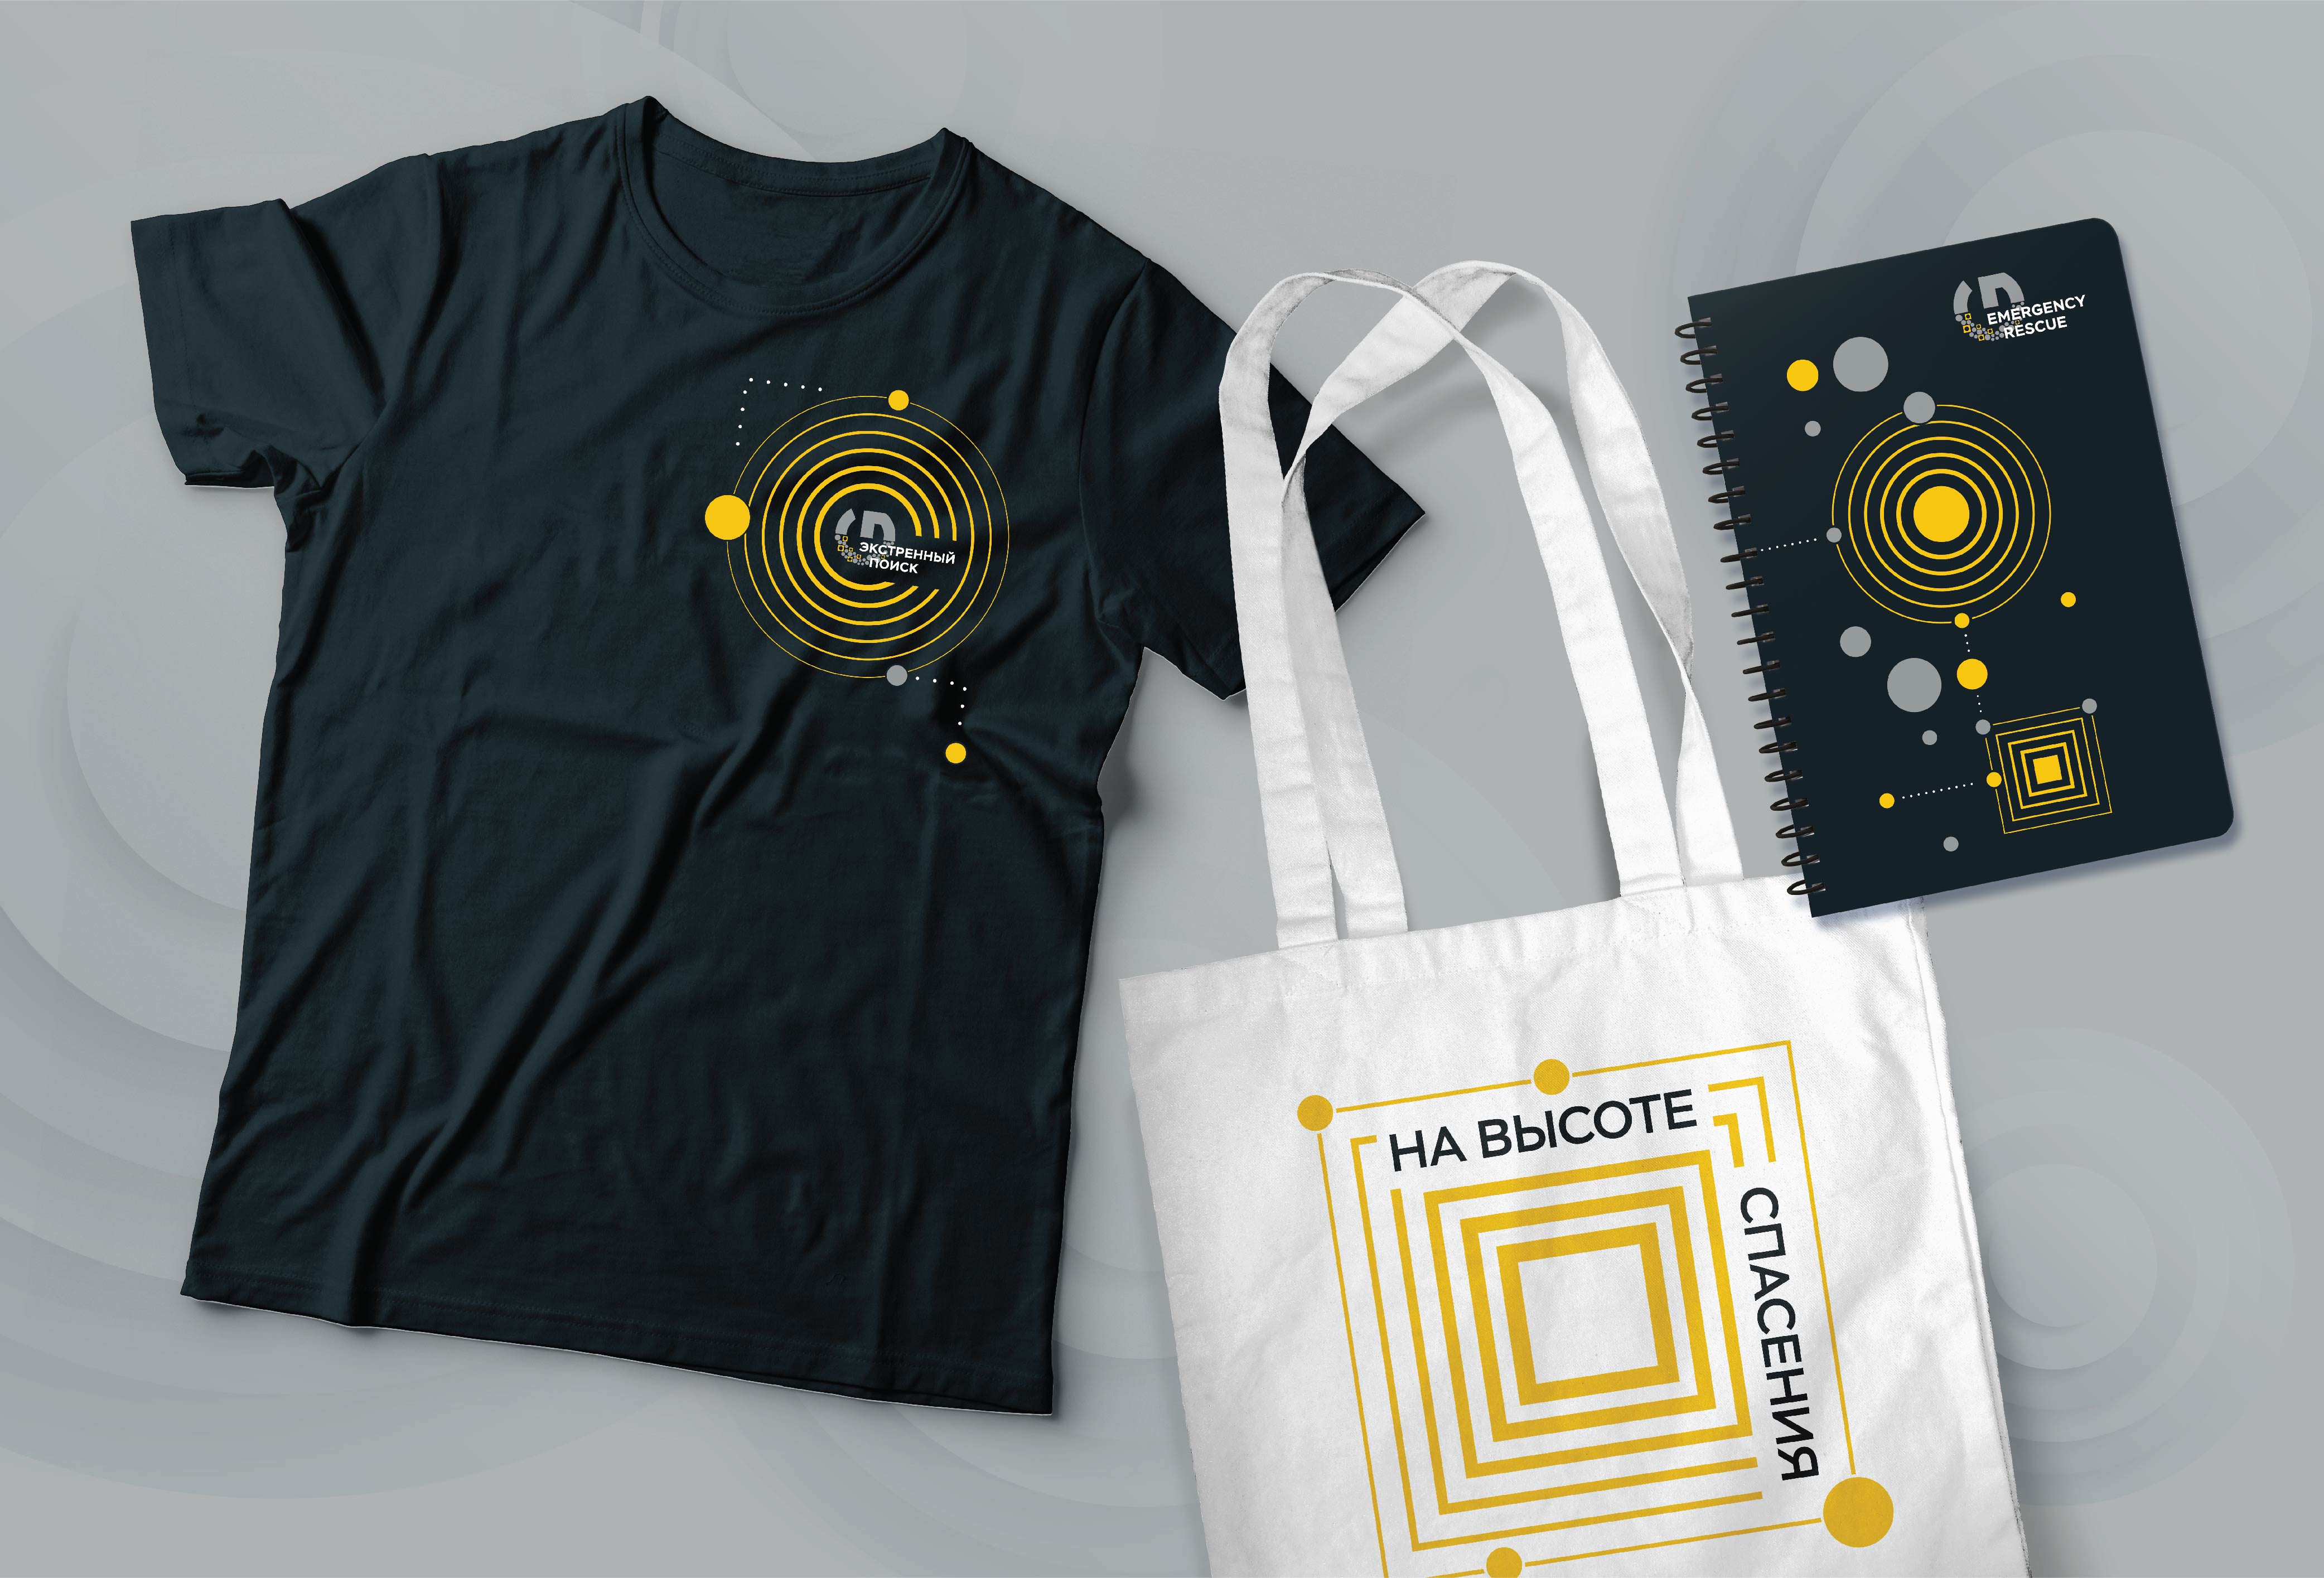 Дизайн мерча конкурса "Экстренный поиск": футболка, шопер, блокнот